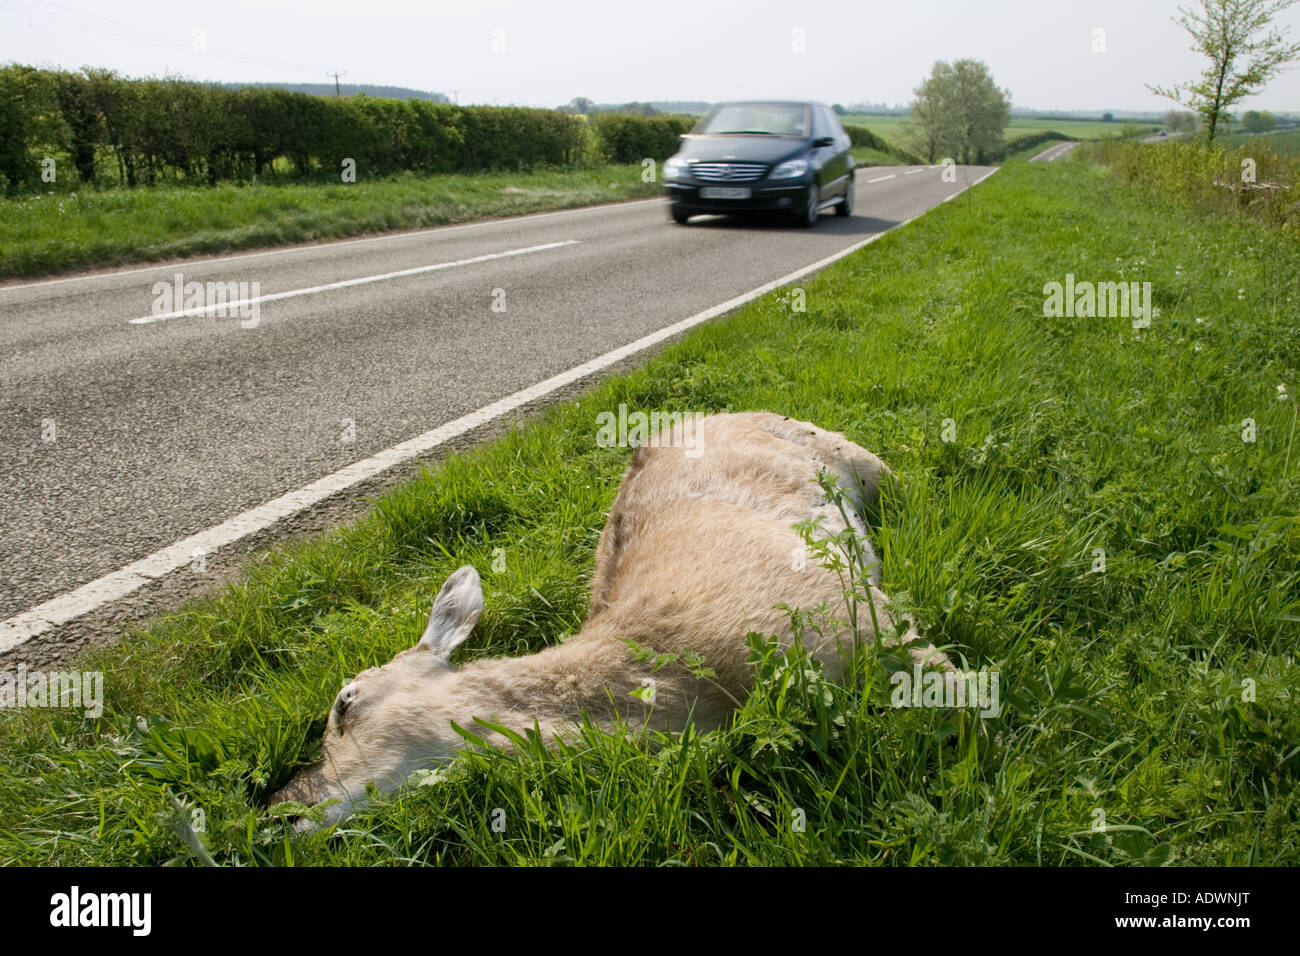 Les lecteurs de voiture passé chevreuil mort sur route de campagne de l'Oxfordshire Charlbury United Kingdom Banque D'Images